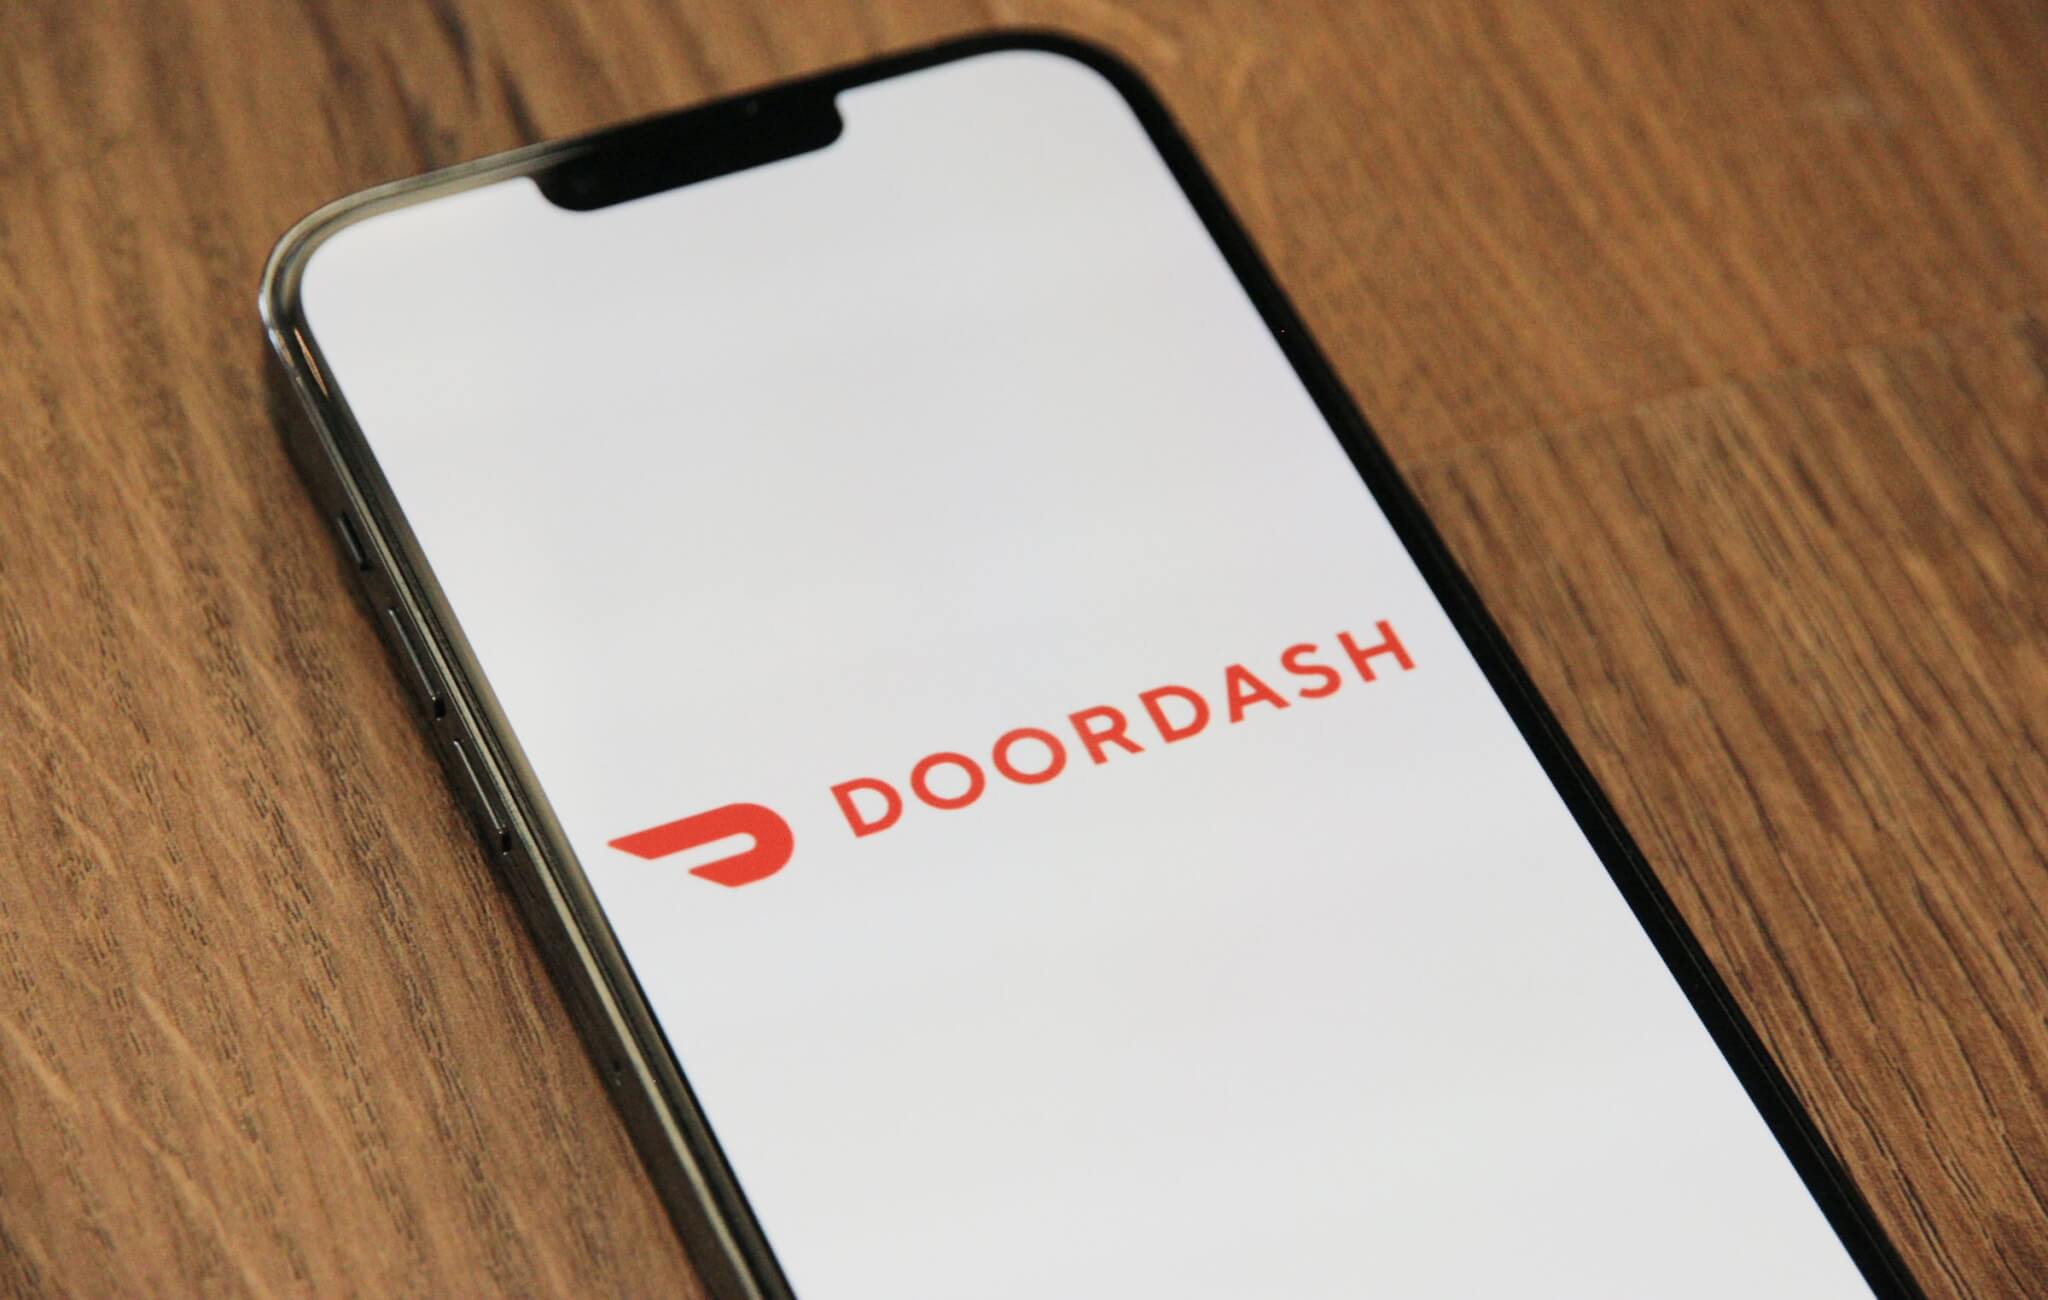 Doordash app on a phone